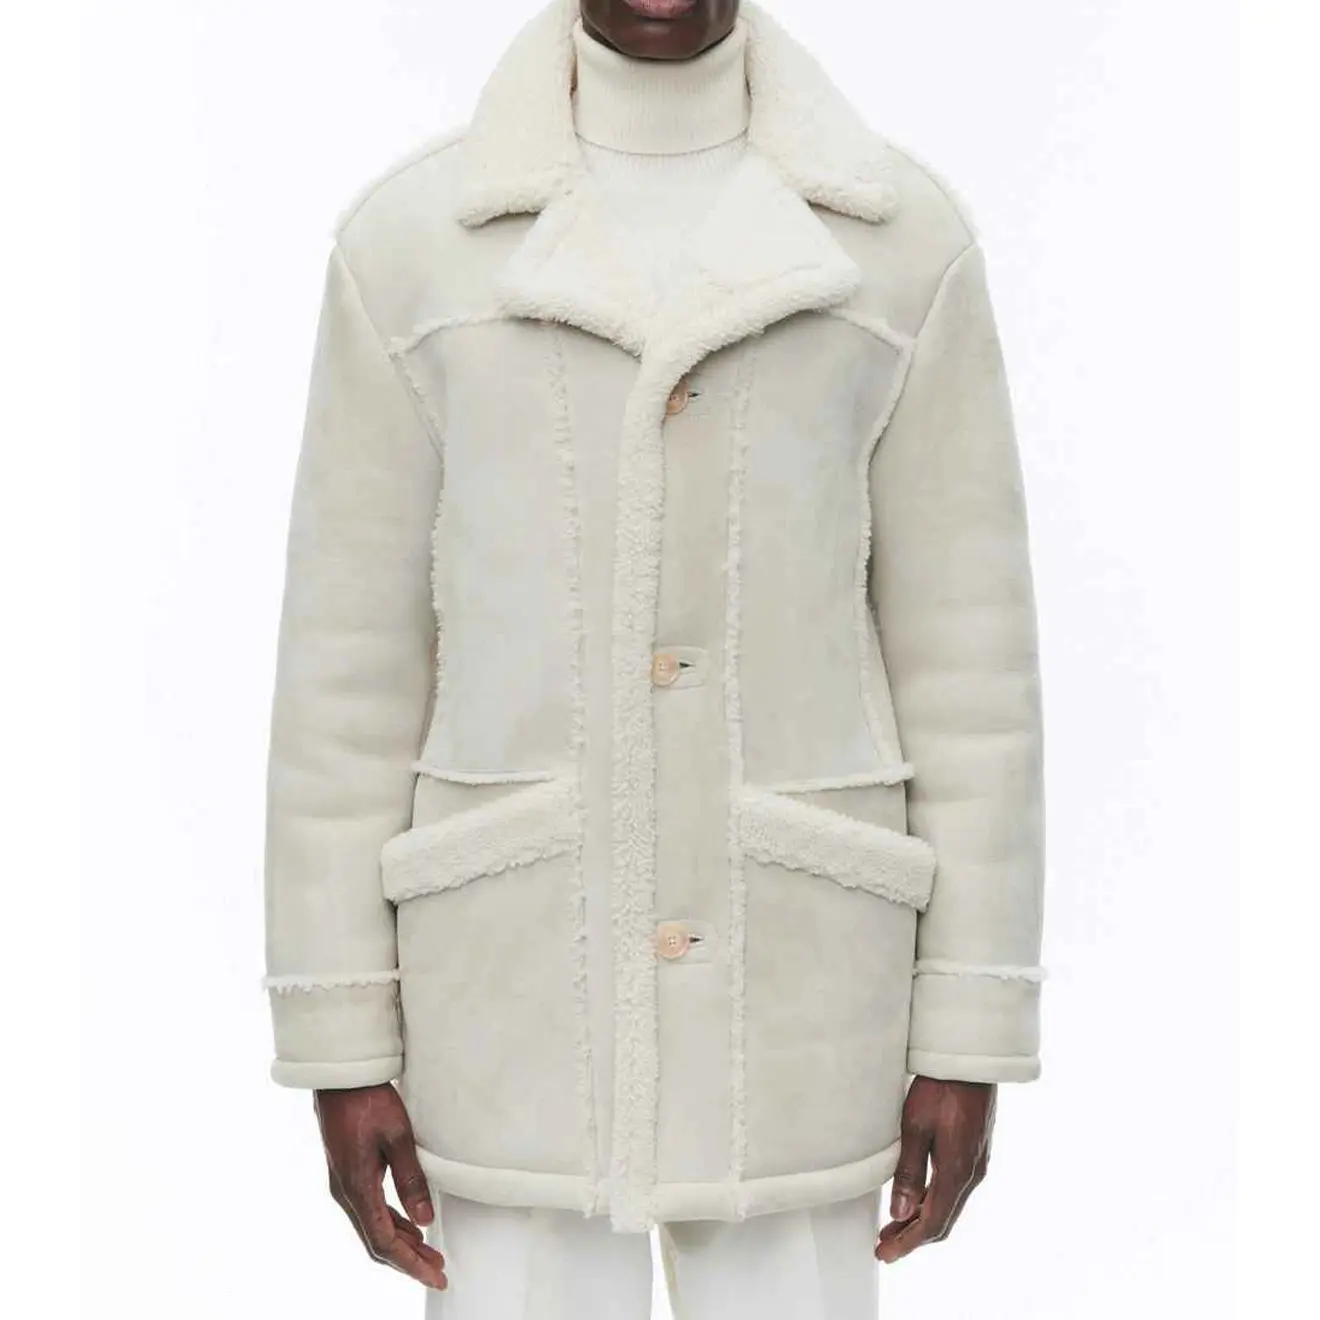 Colletto cappotto personalizzato in vera montone a 3 bottoni con patta abbottonata con chiusura a tasche in lana